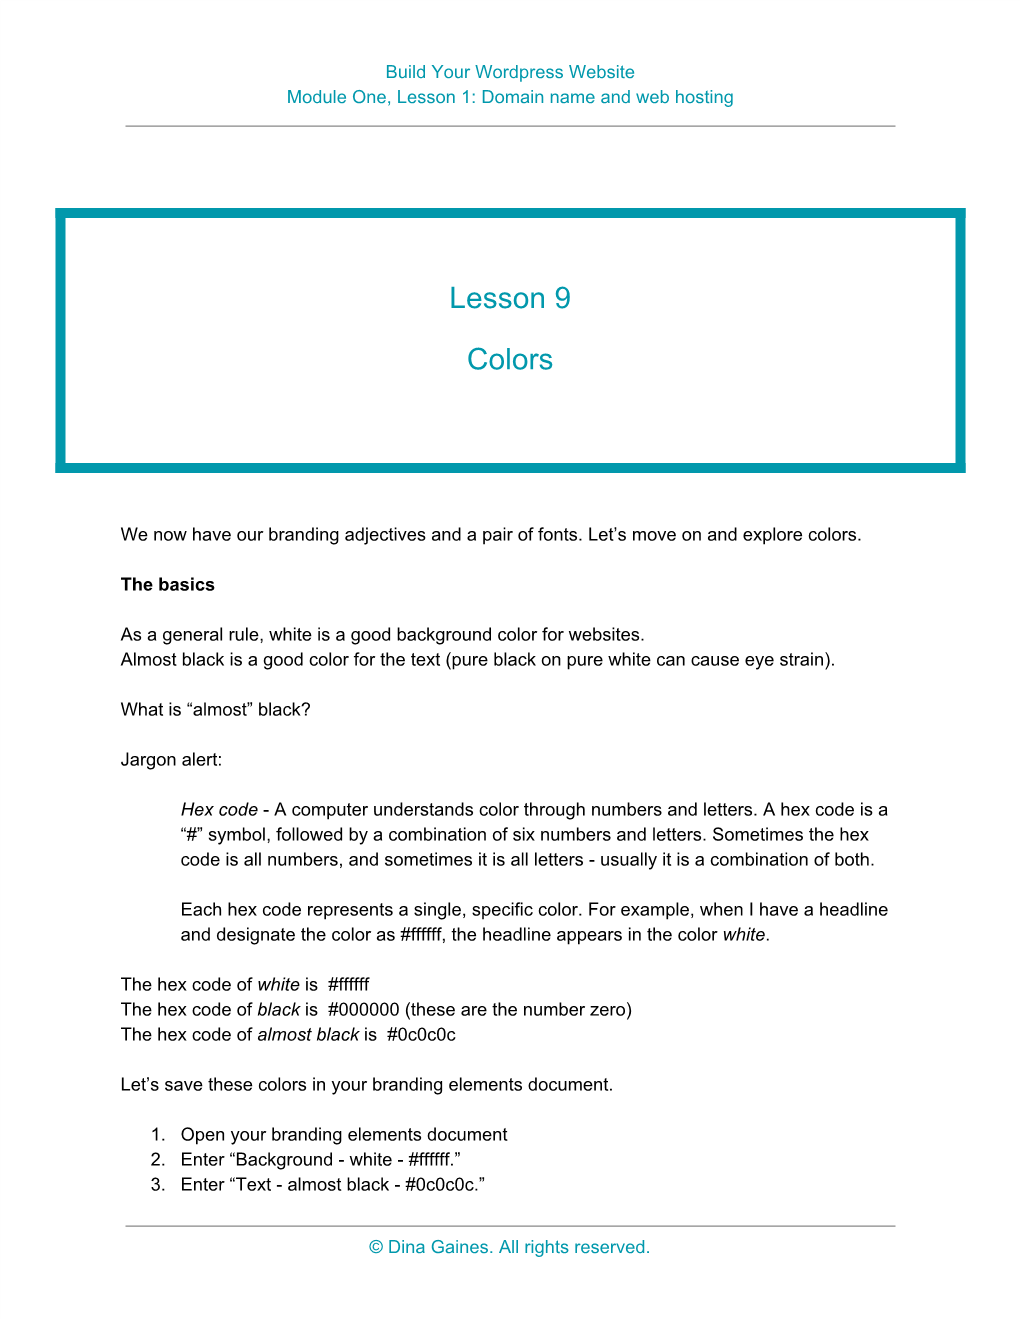 Lesson 9 Colors